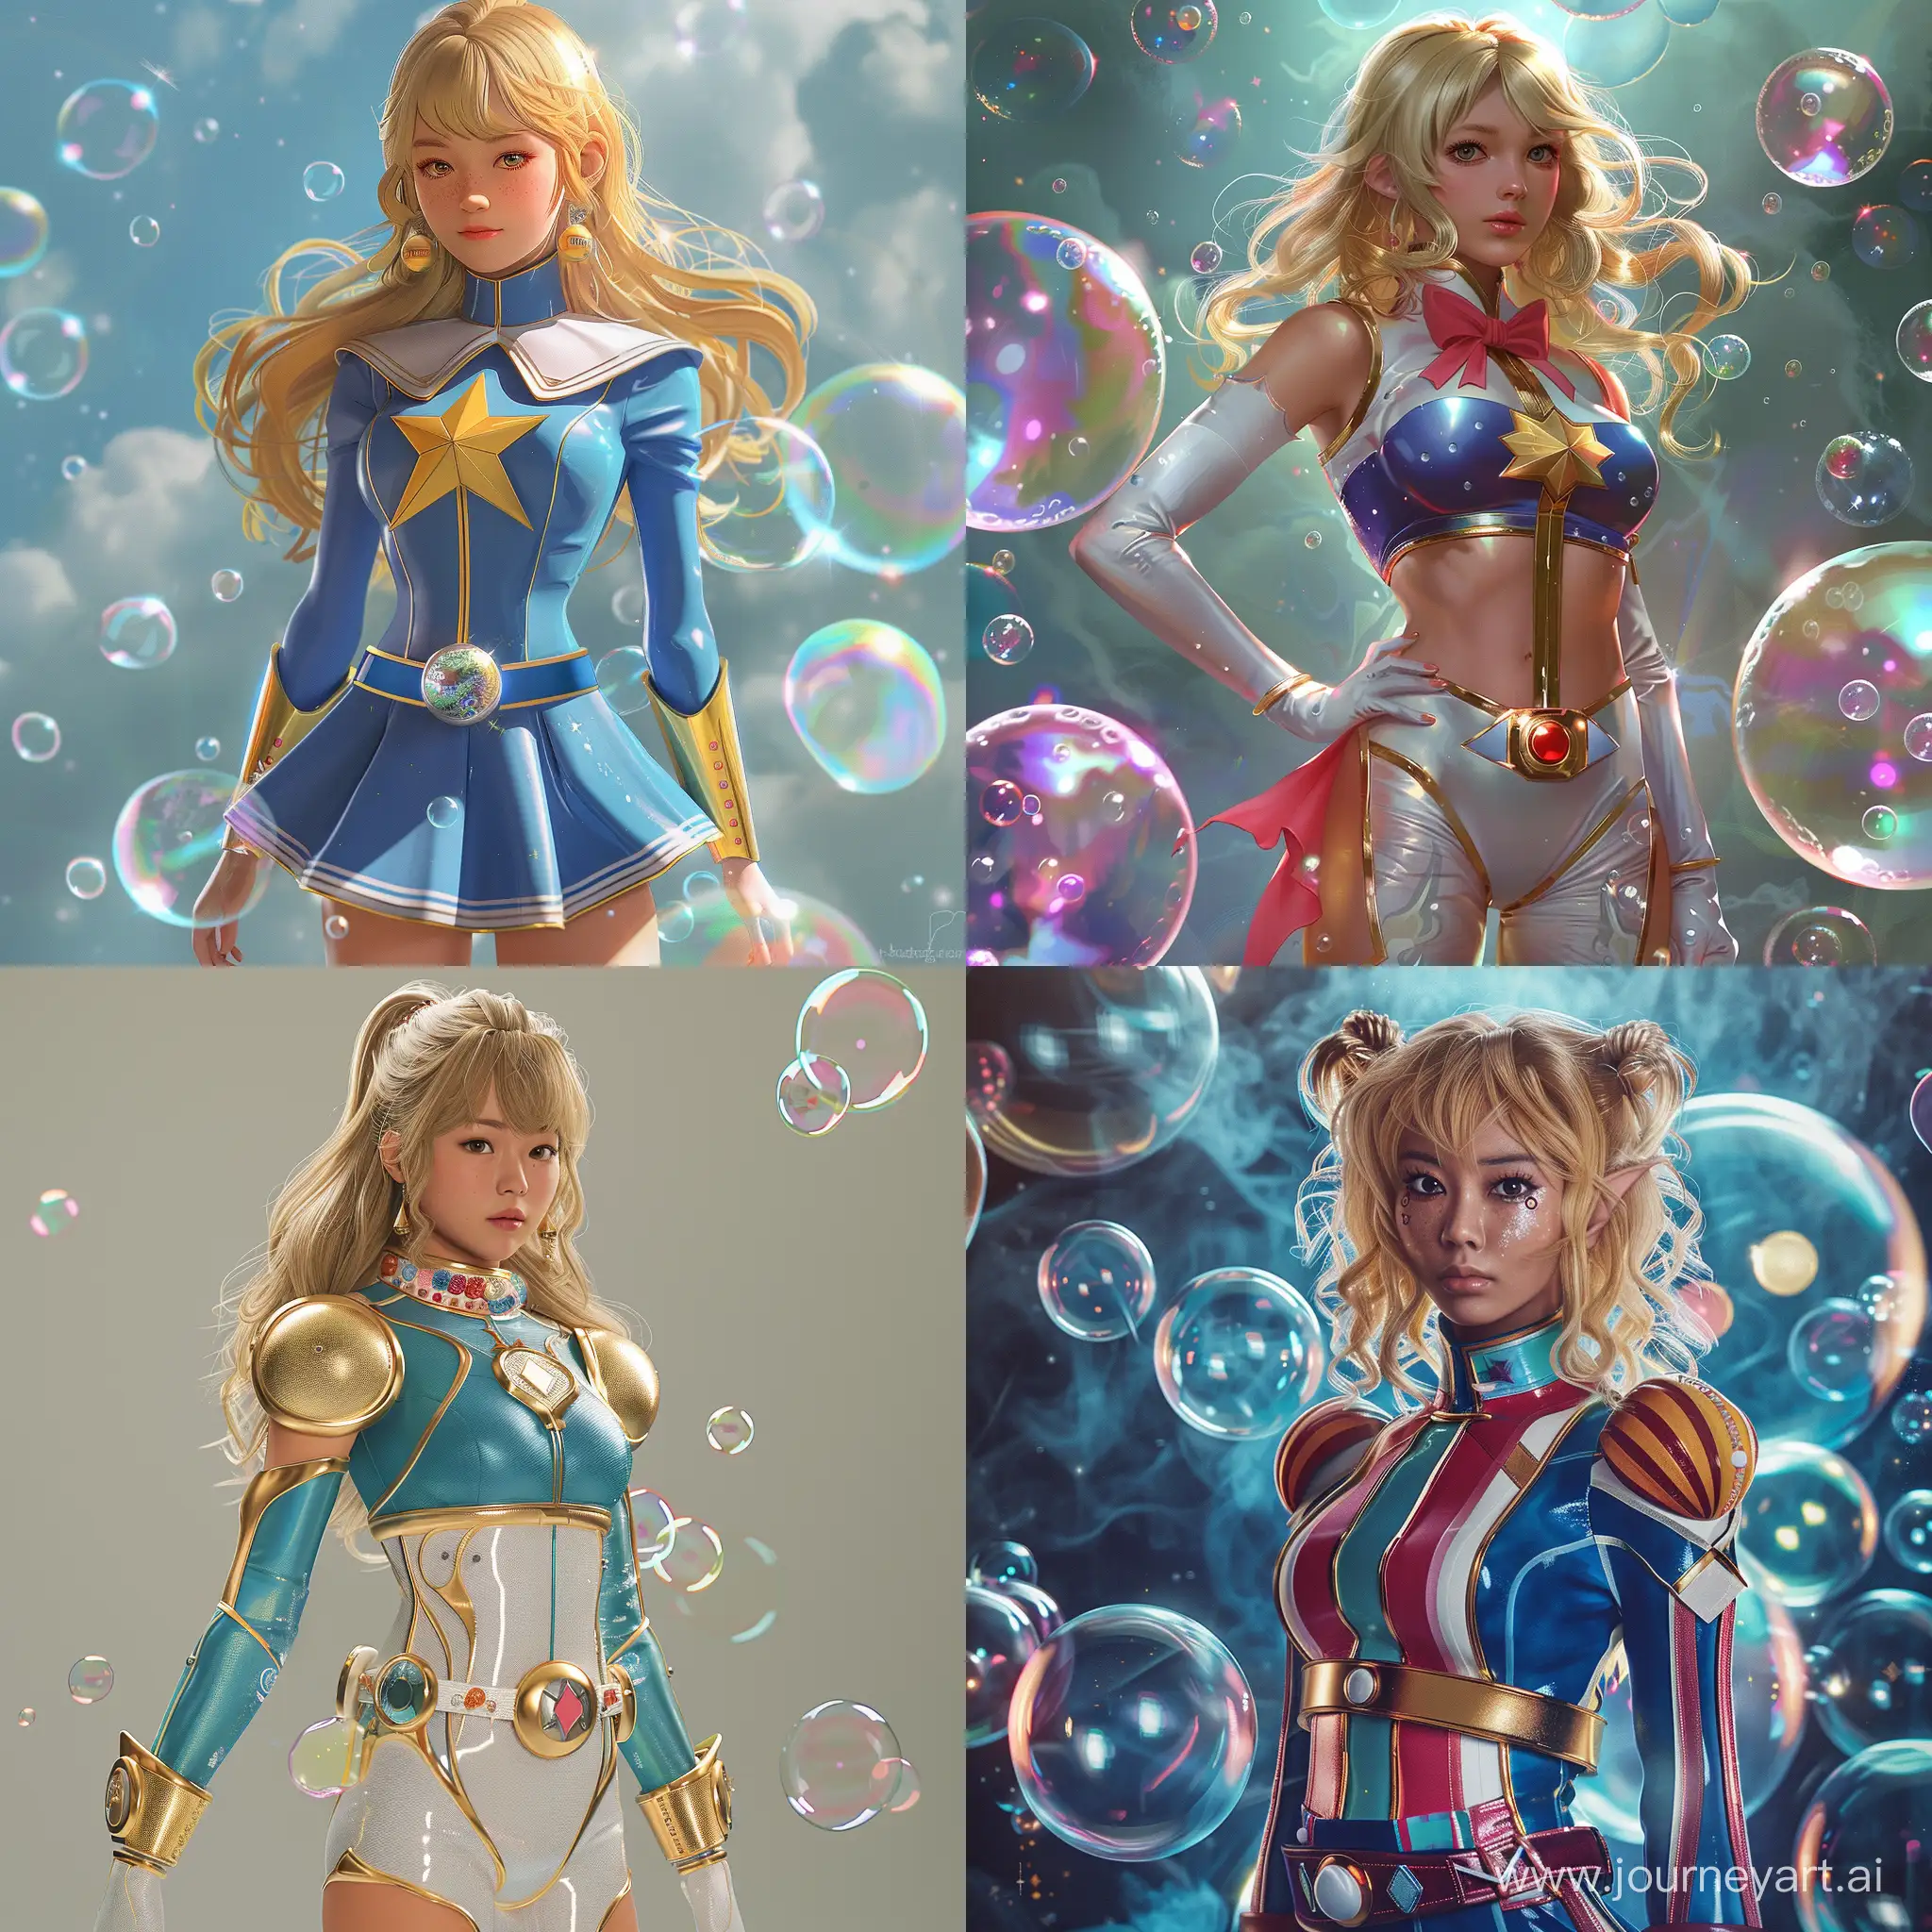 BubbleClad-Superhero-Girl-Inspiring-Super-Sentai-and-Magical-Girl-Uniforms